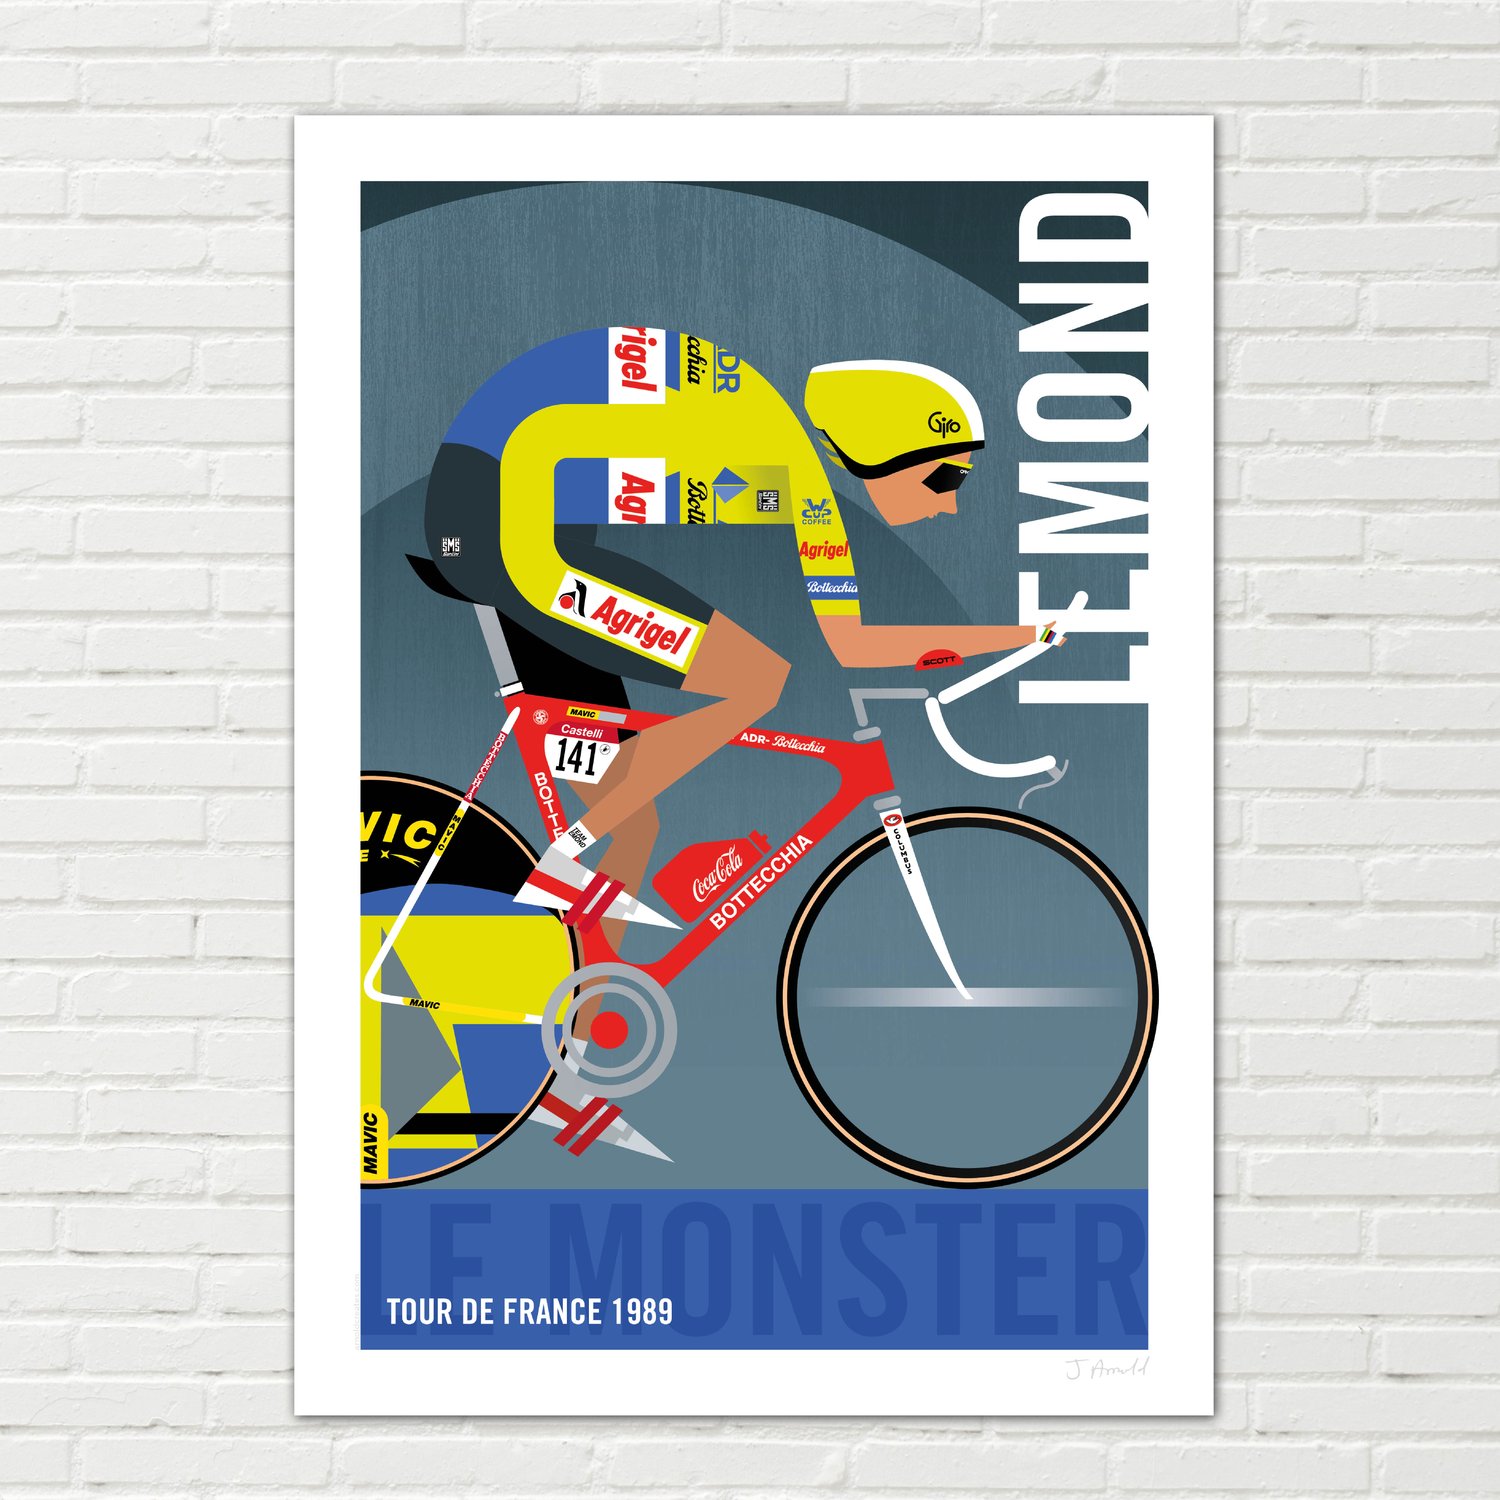 Greg LeMond poster